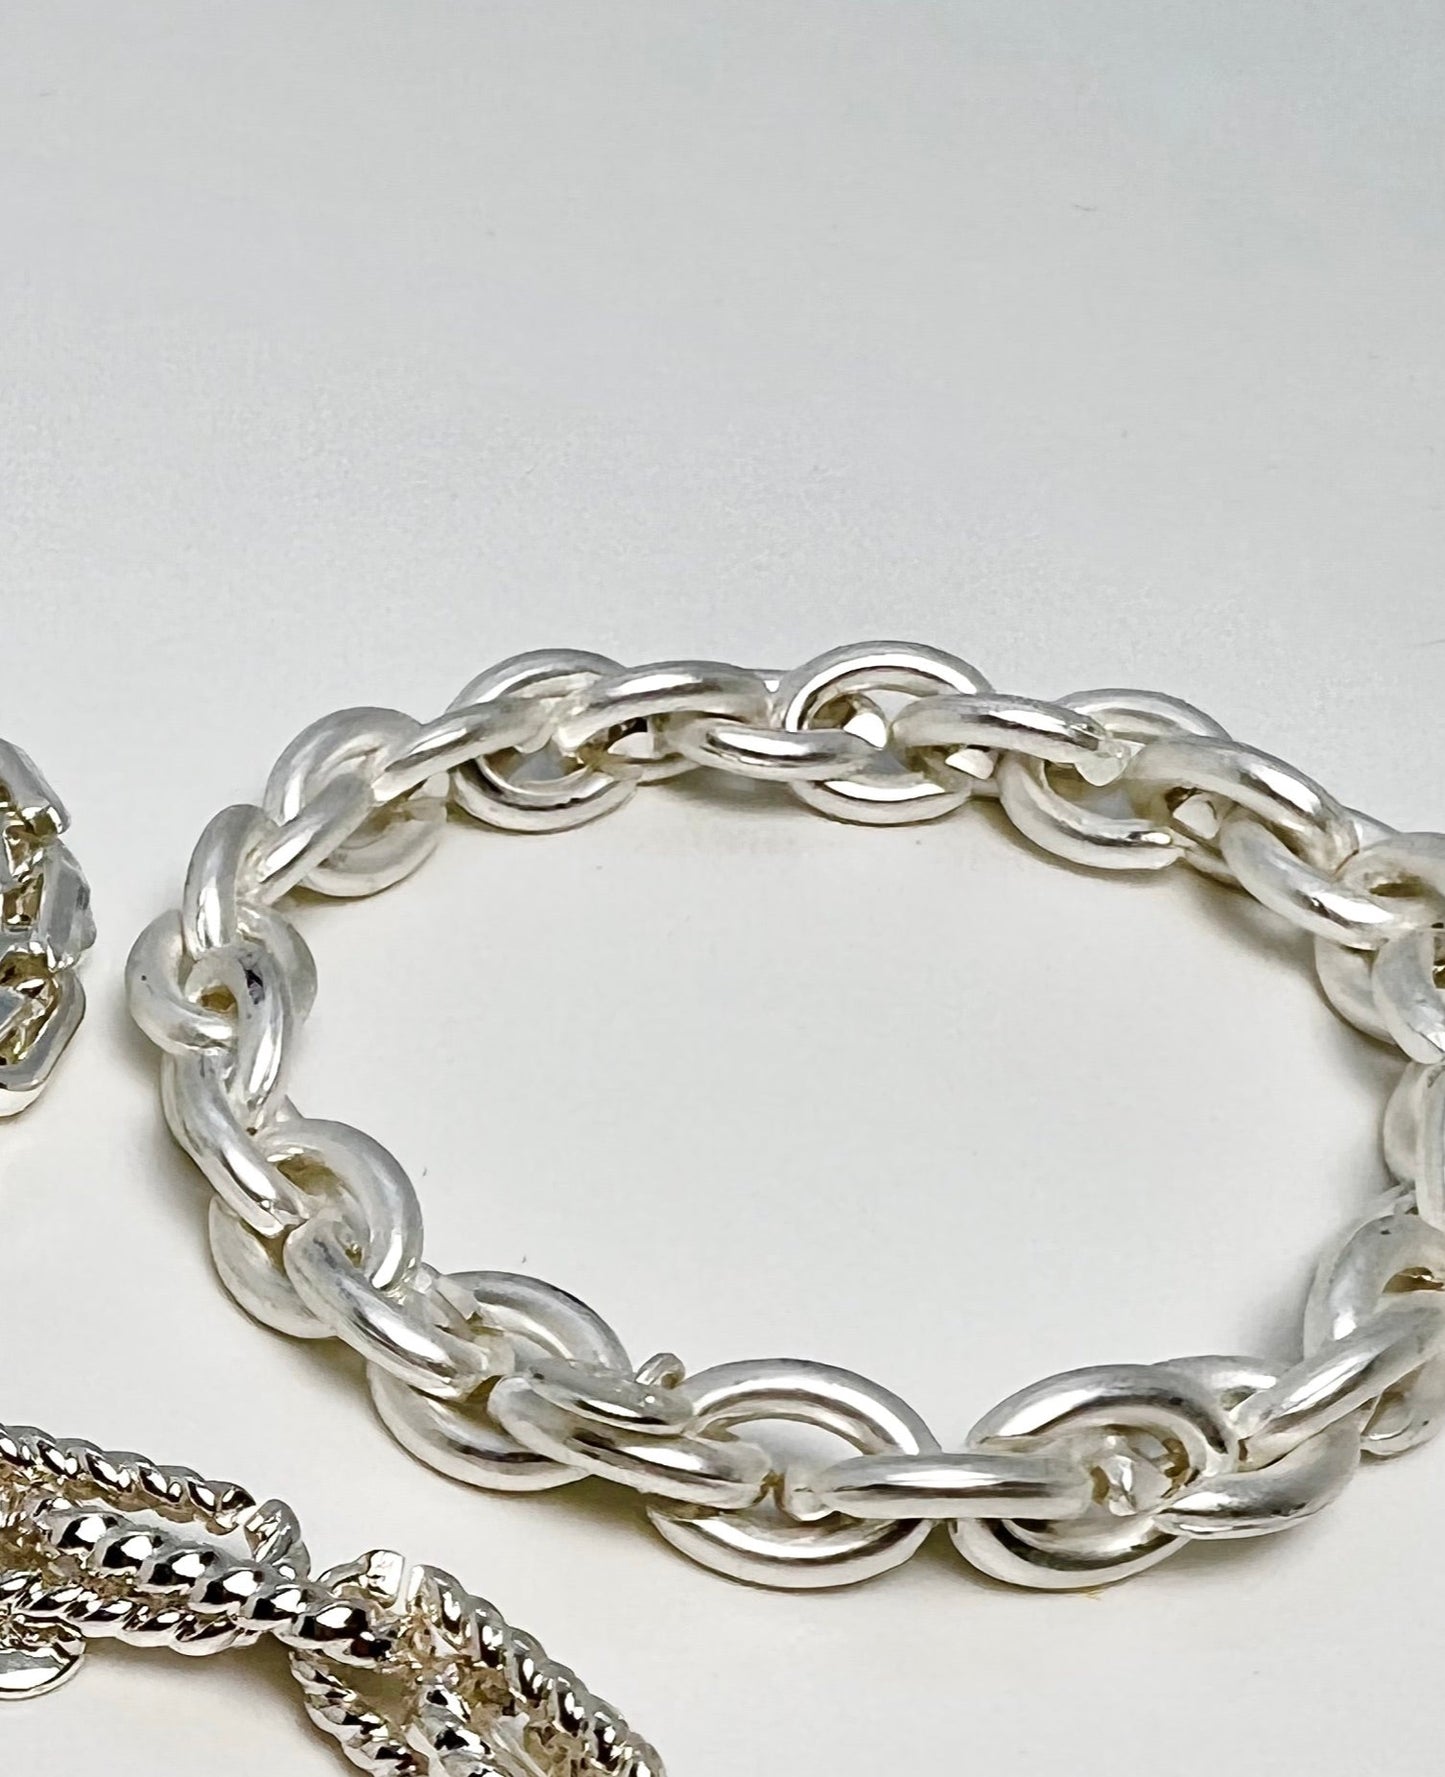 Bracelet chaines Argent